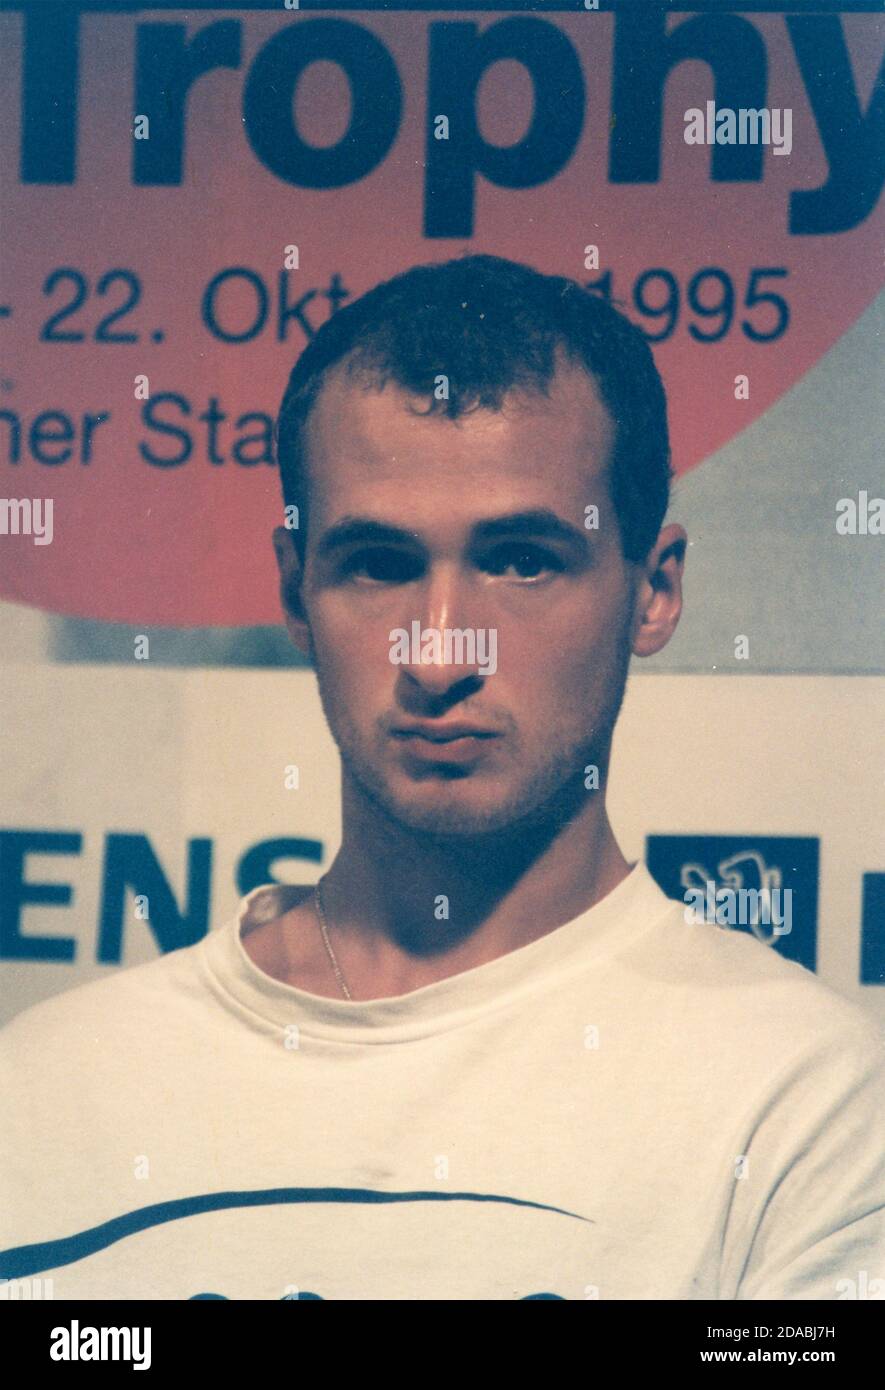 El tenista ucraniano Andrei Medvedev, 1995 Foto de stock